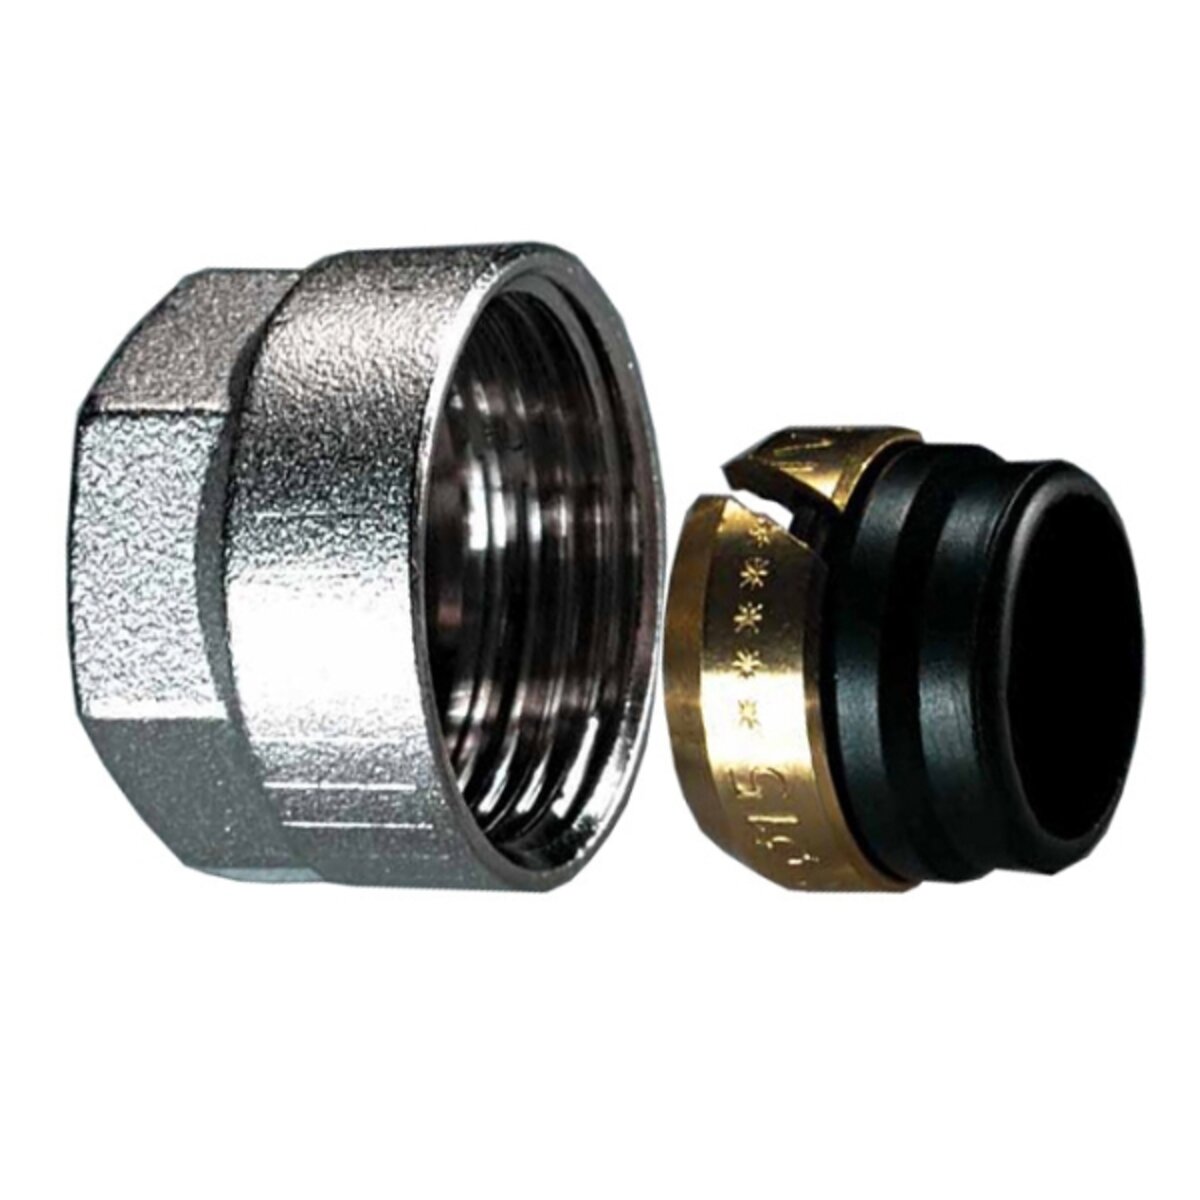 Rubber lockshield valve fitting for copper pipe 12mmx1 for Ivar lockshield valves